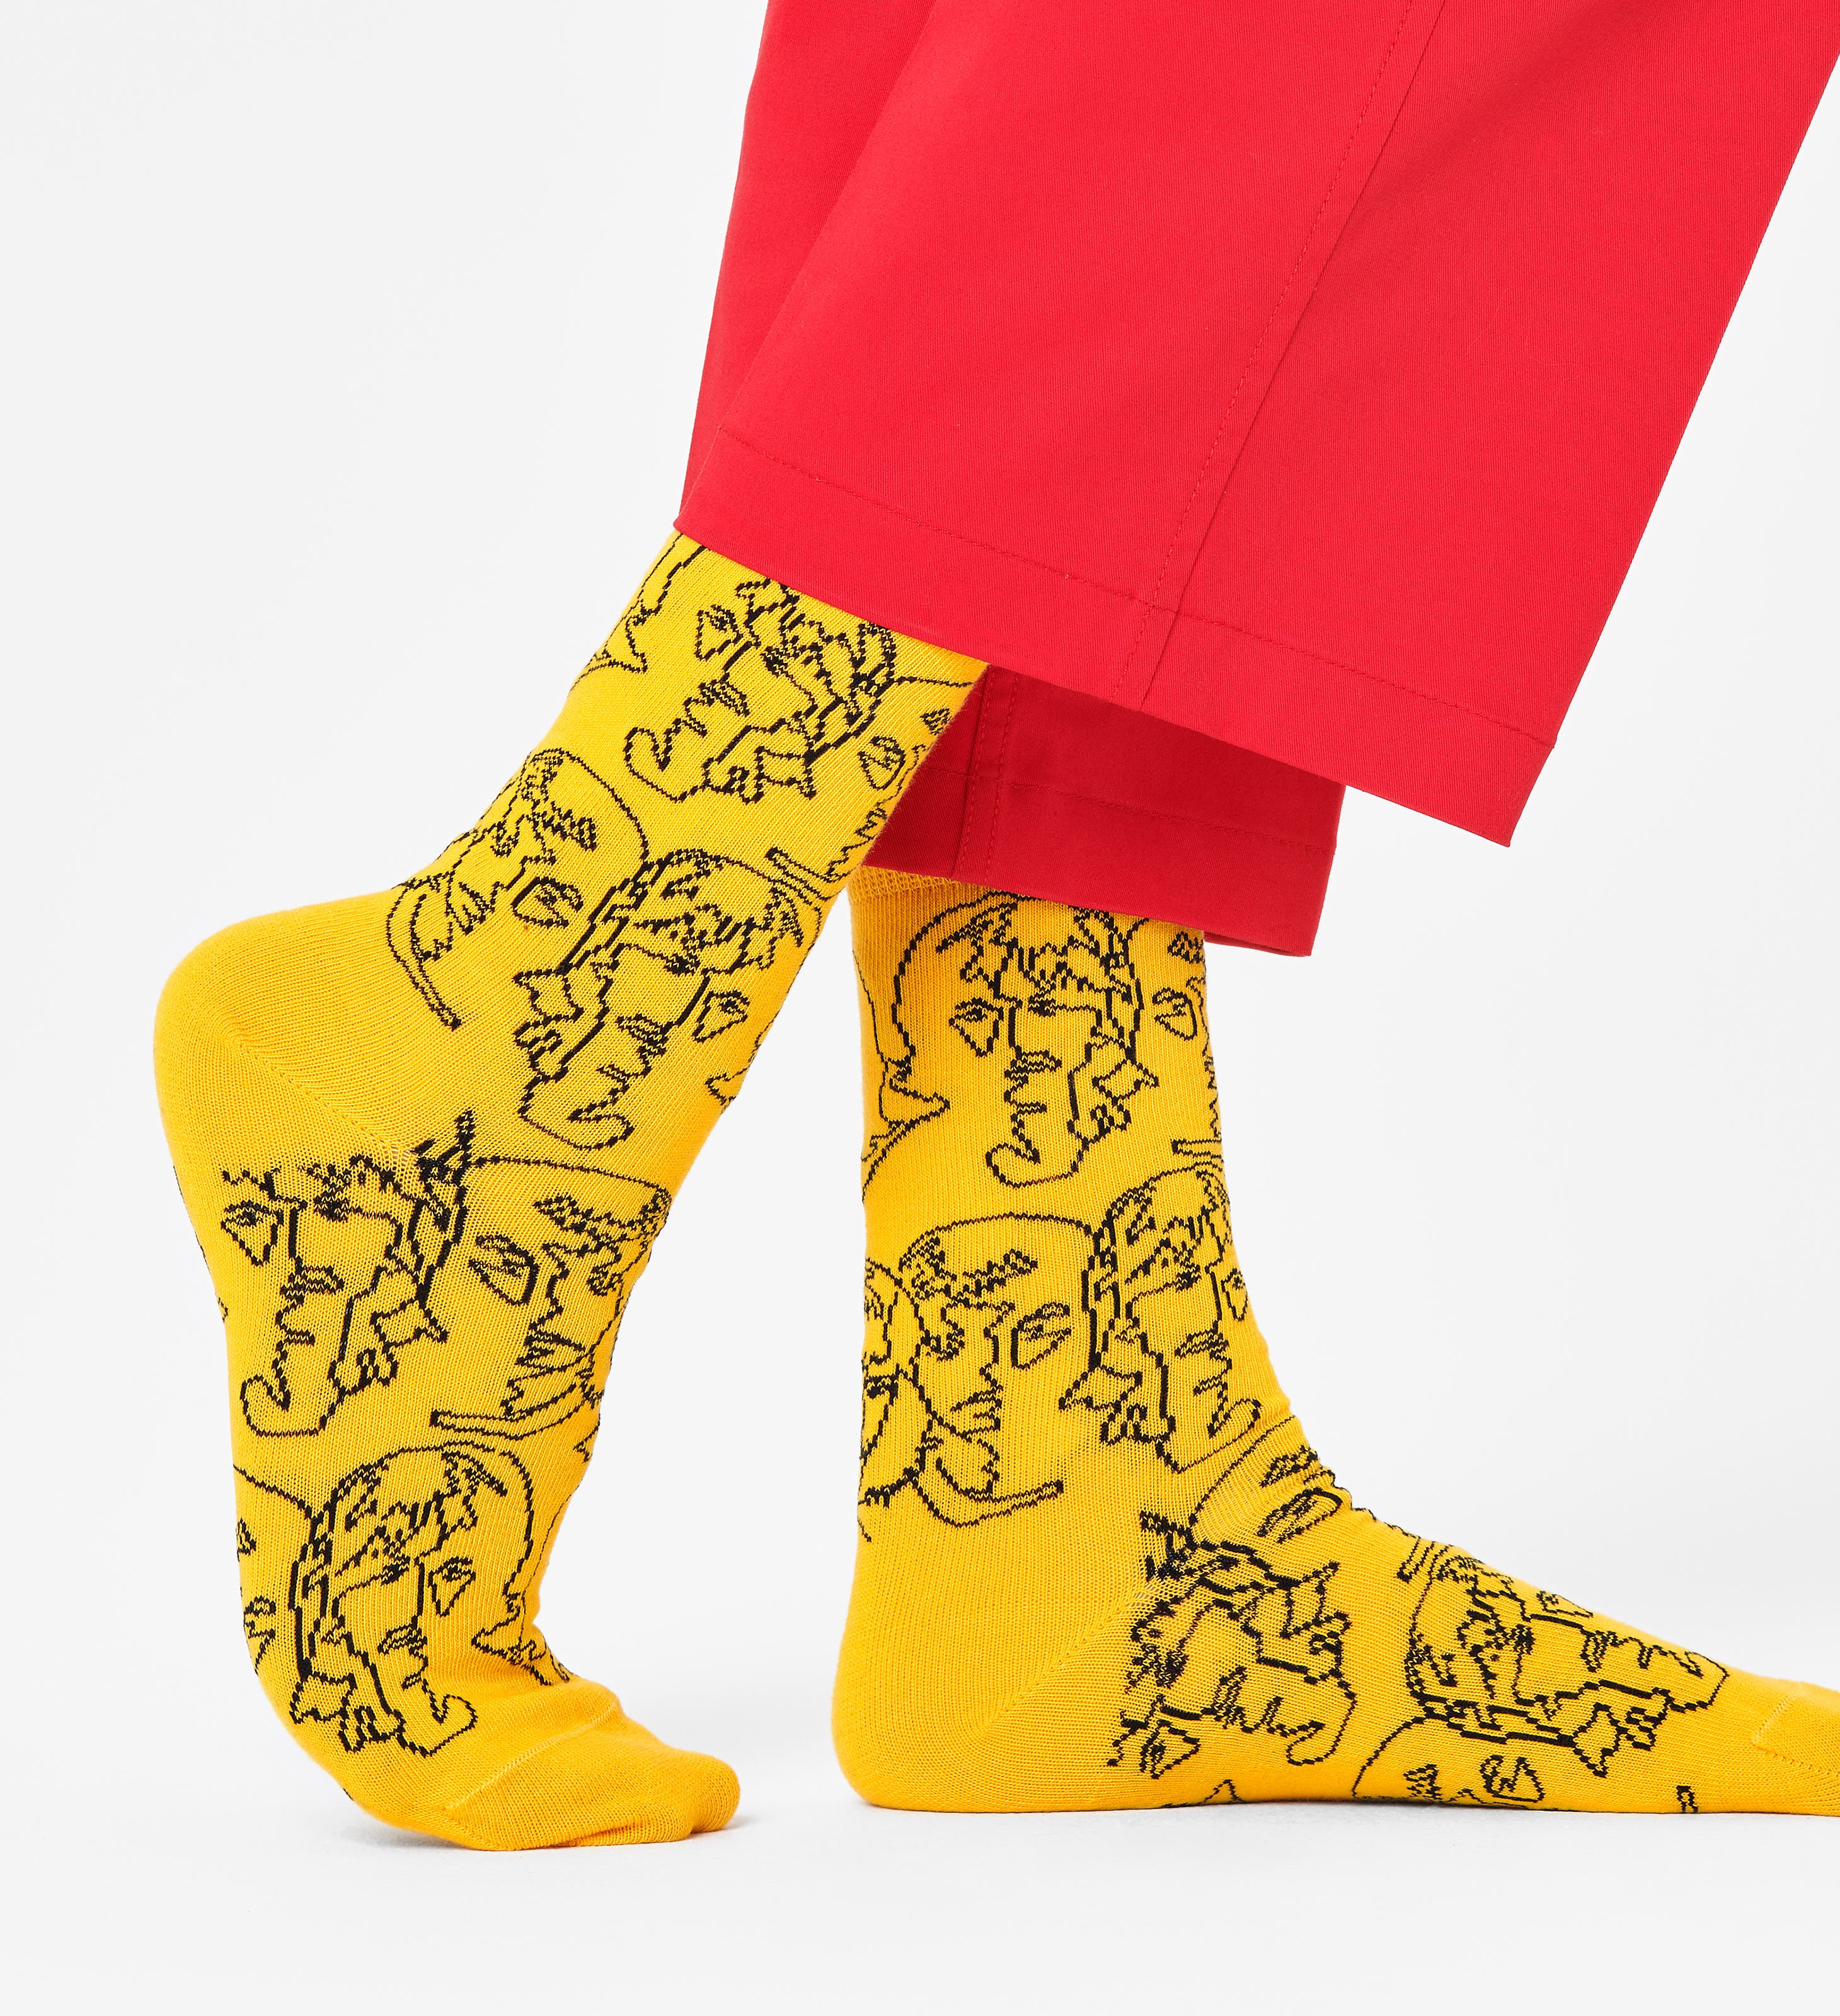 Noir-Jaune chaussettes pour homme et femme Visiter la boutique Happy SocksHappy Socks Palm Sock colorées et amusantes 